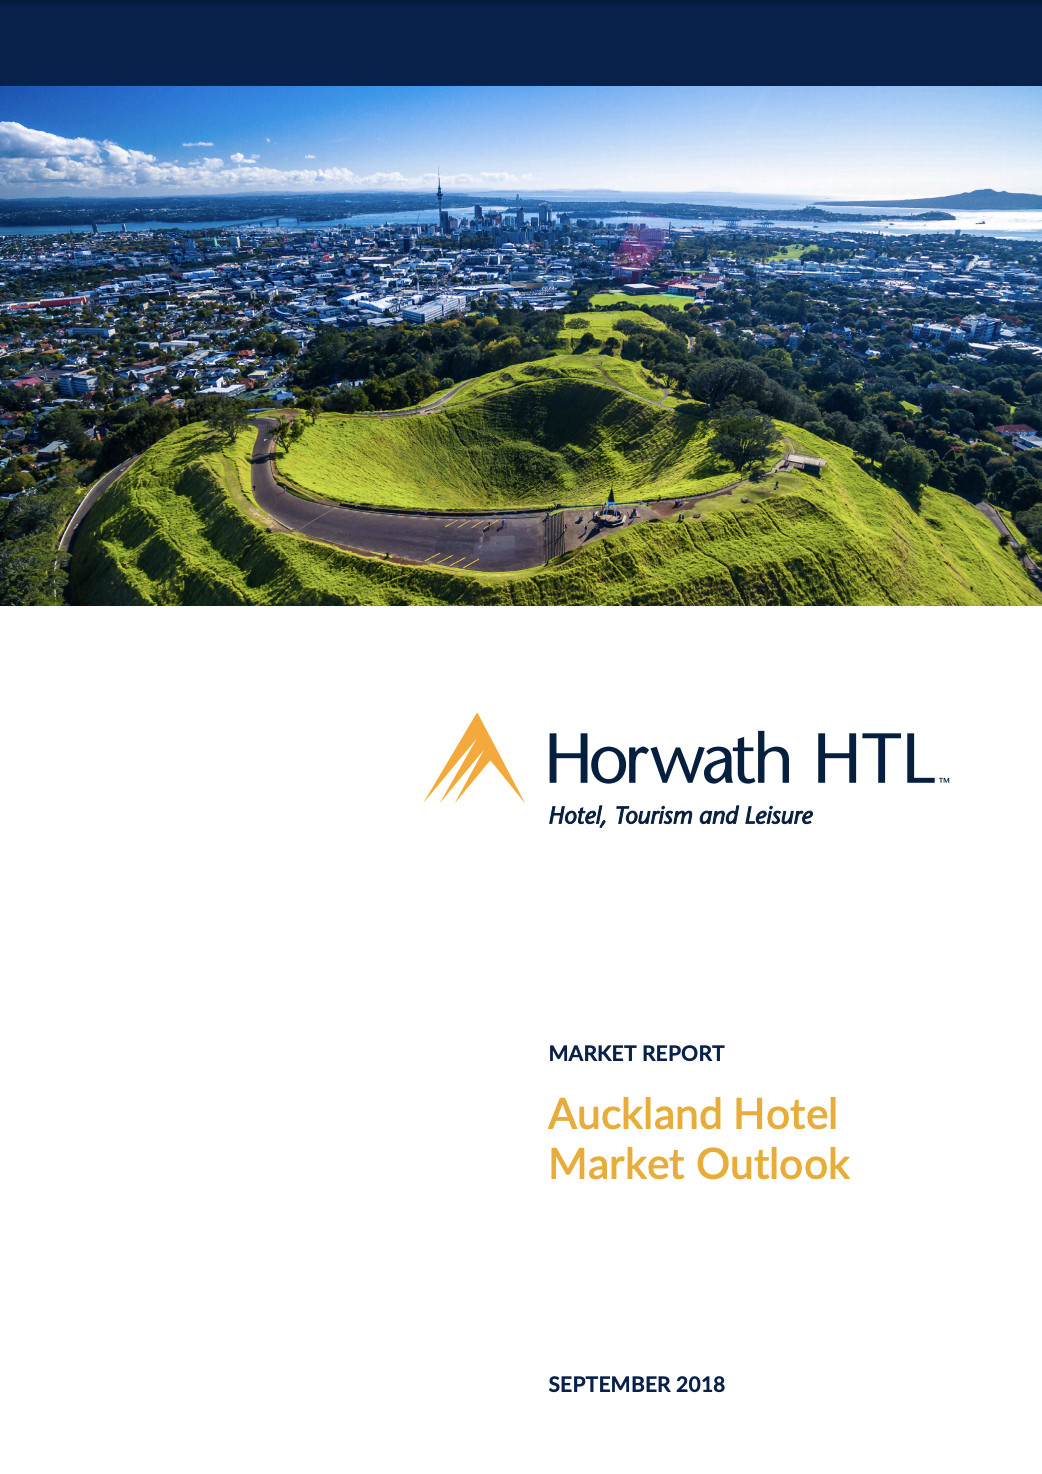 Market Report: Auckland Hotel Market Outlook